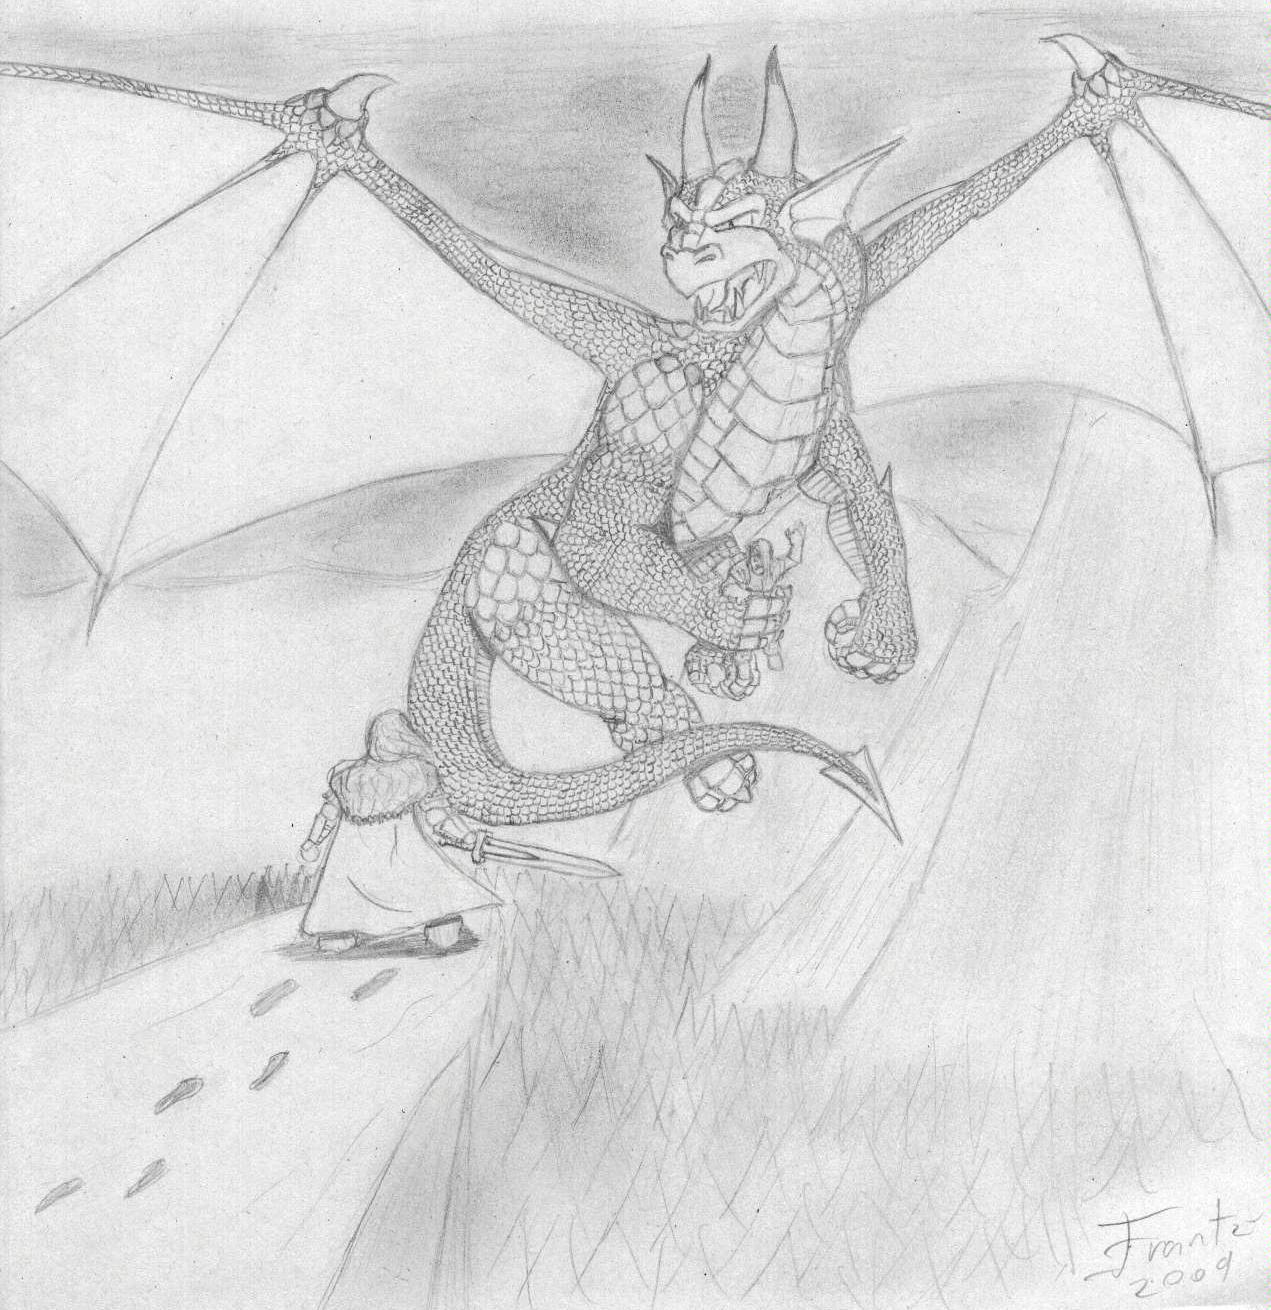 Artwork, Dragon's rage